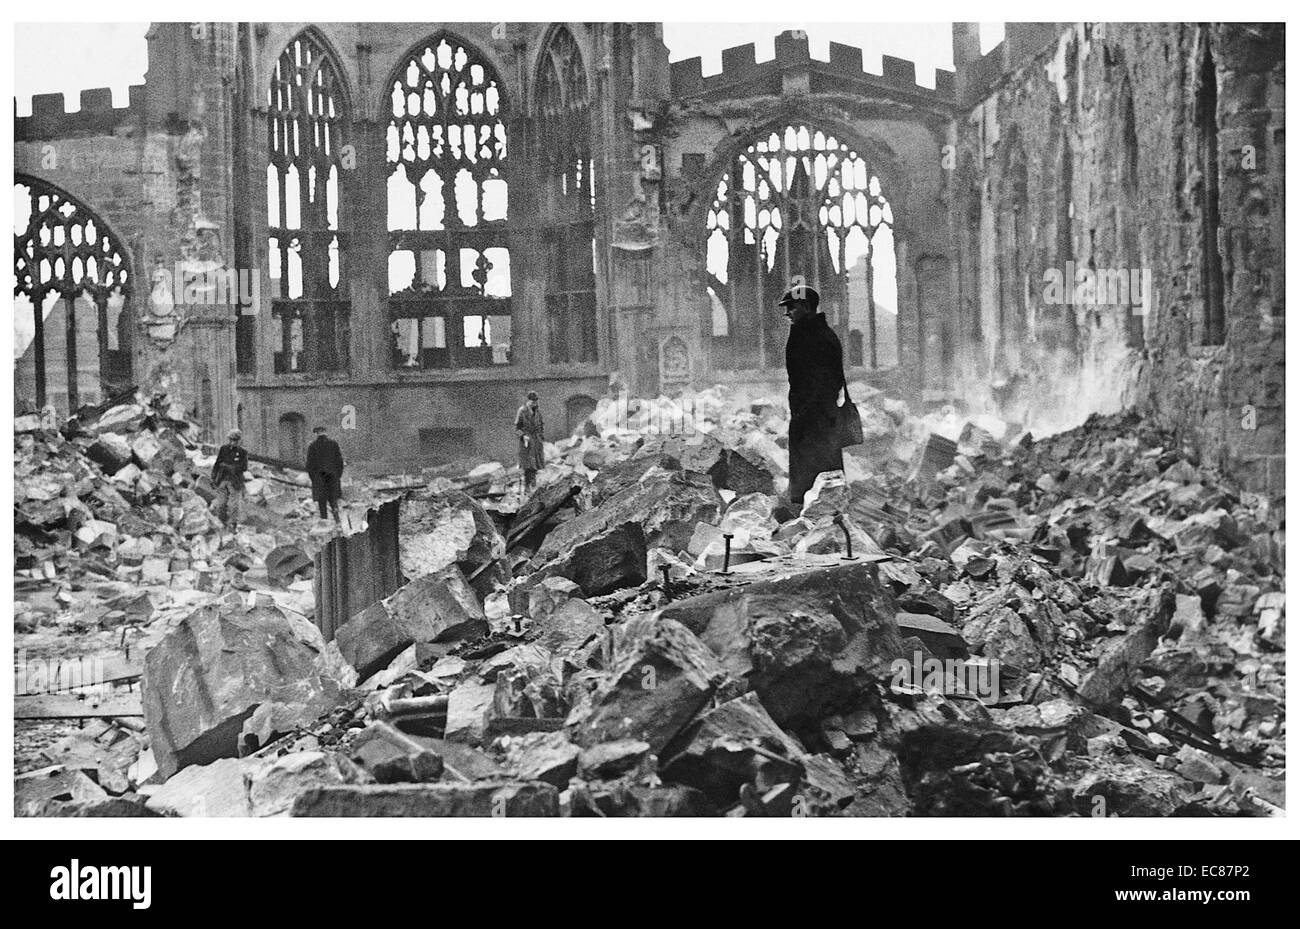 Fotografía de la catedral de Coventry a raíz de un ataque aéreo. Fechado en 1940 Foto de stock